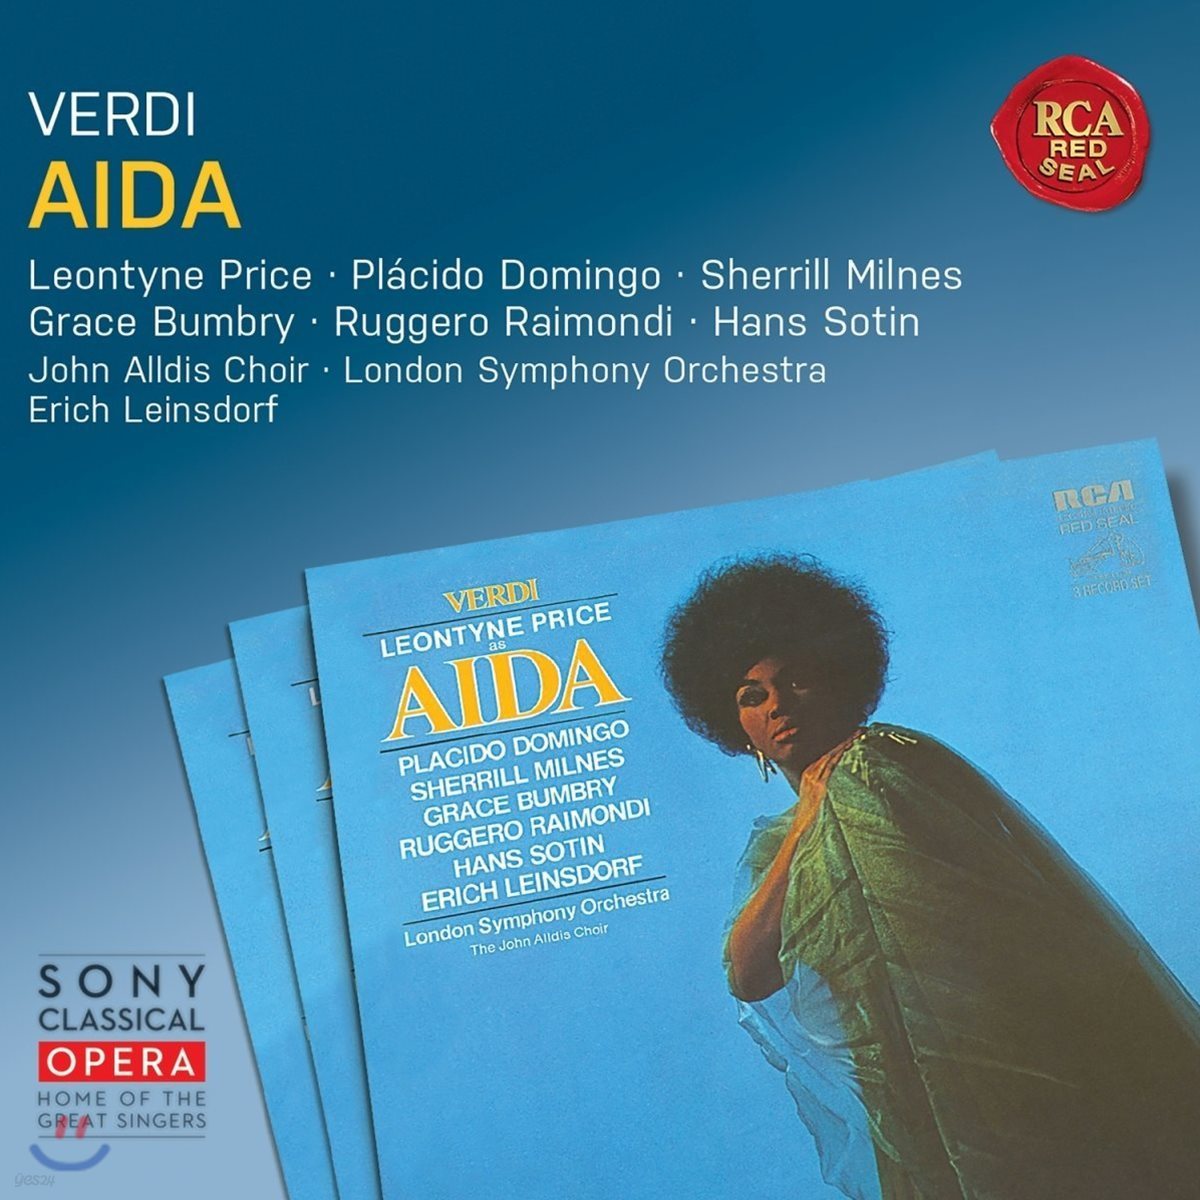 Leontyne Price / Placido Domingo 베르디: 아이다 - 레온타인 프라이스, 플라시도 도밍고, 에리히 라인스도르프 (Verdi: Aida)